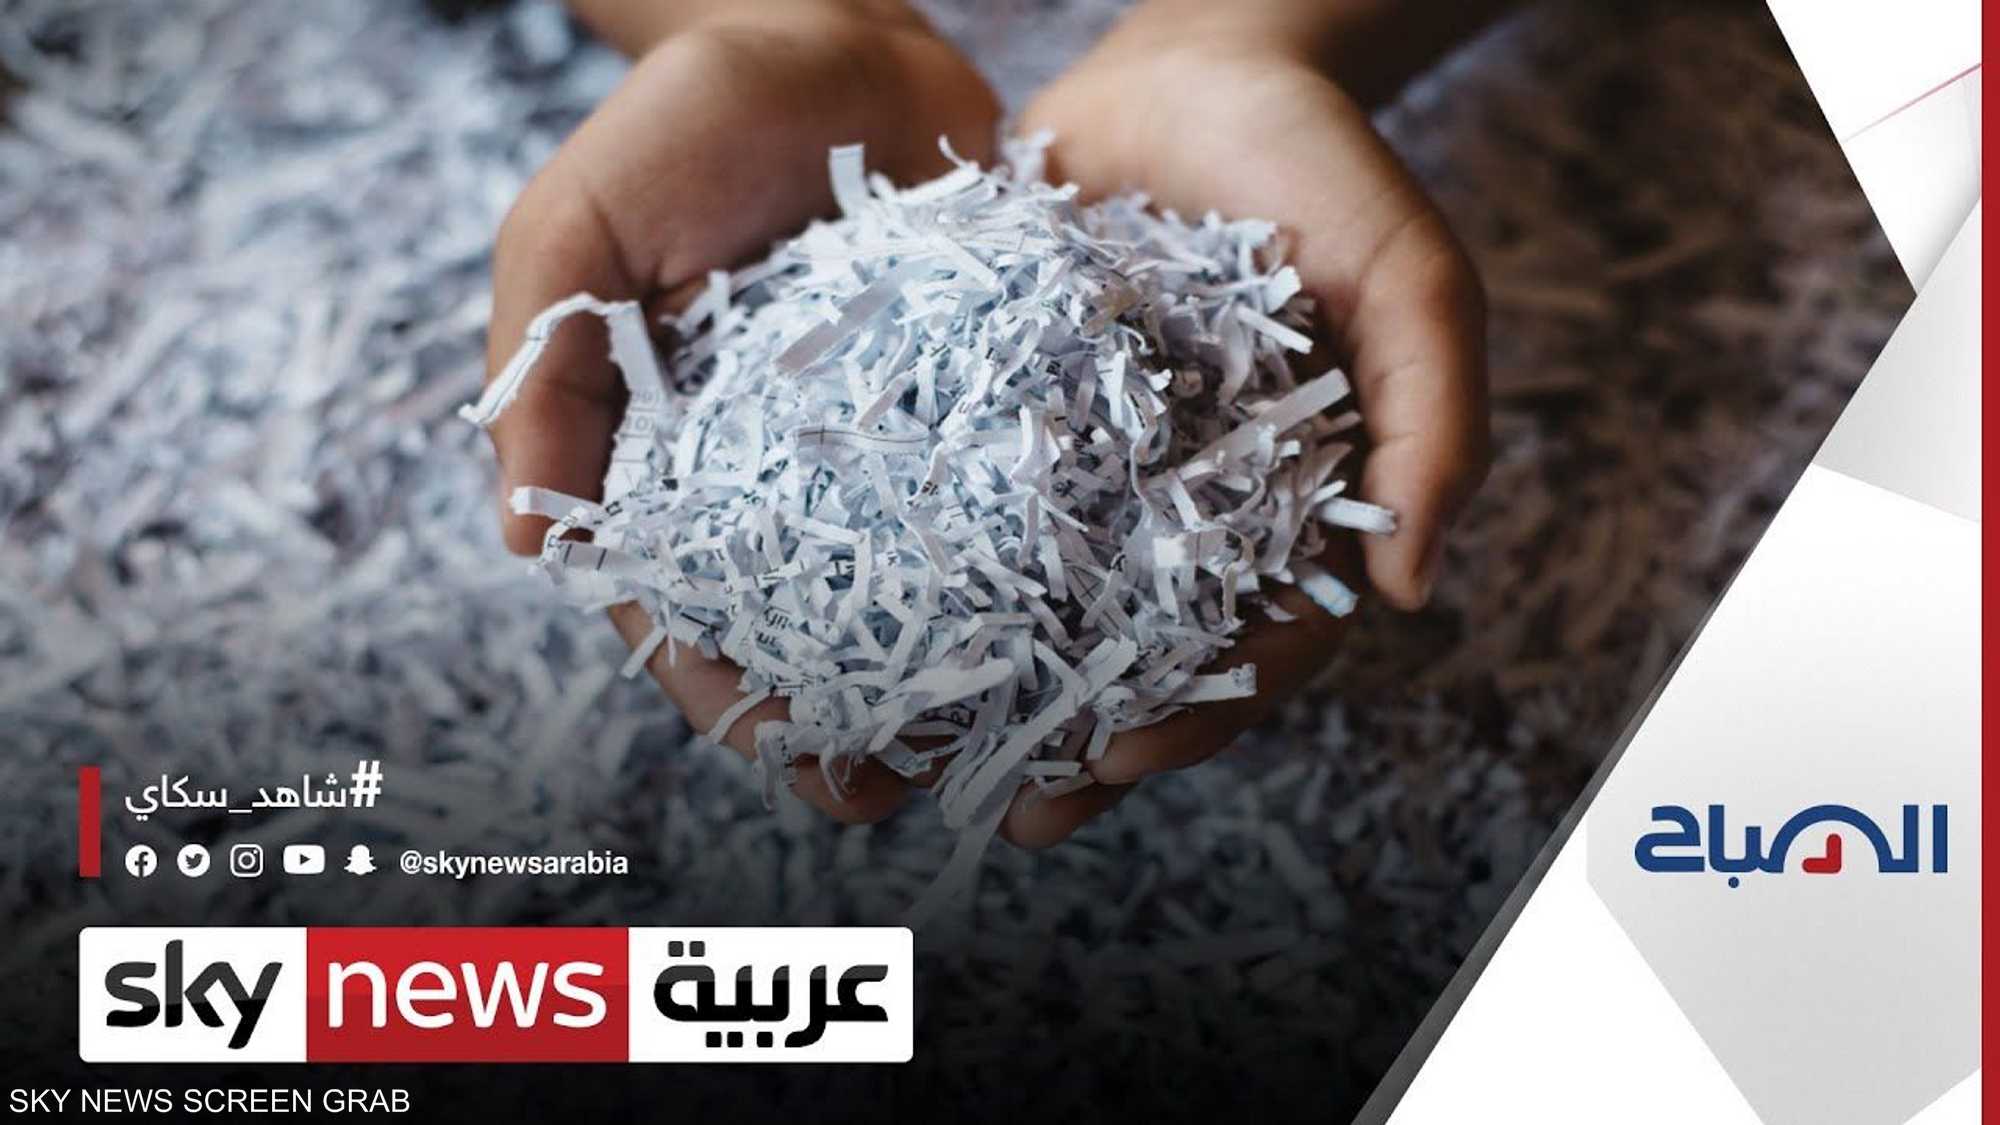 مشروع فلسطيني ينجح في إعادة تدوير المخلفات الورقية